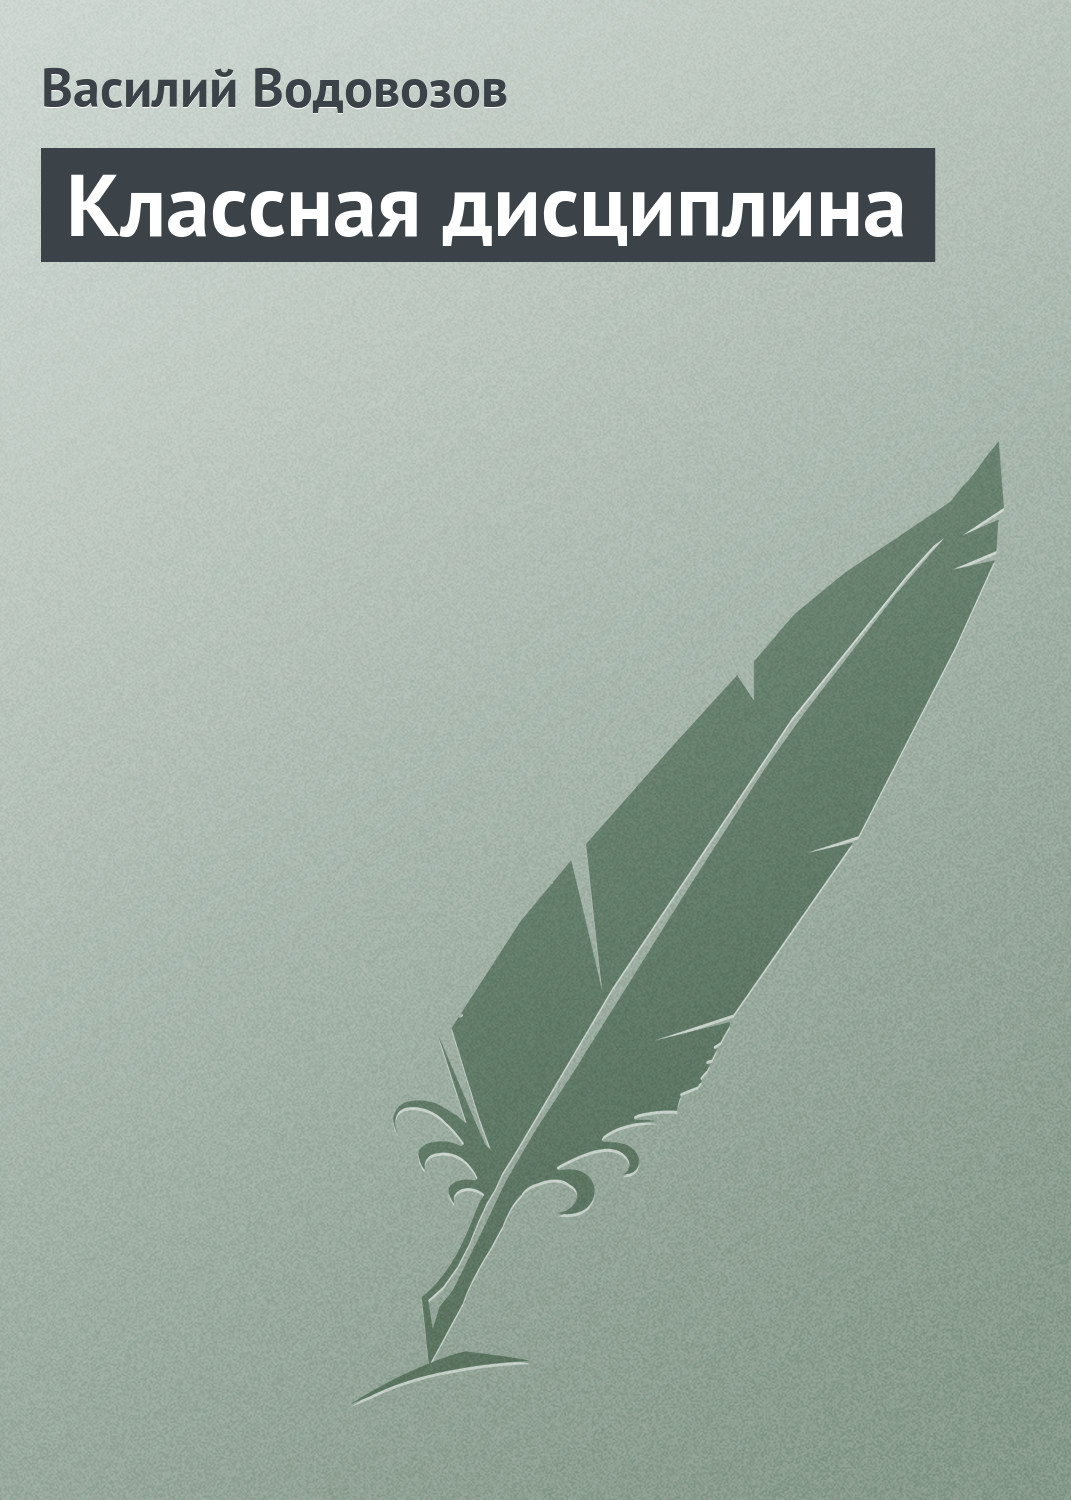 Книга Классная дисциплина из серии , созданная Василий Водовозов, может относится к жанру Педагогика. Стоимость электронной книги Классная дисциплина с идентификатором 22806361 составляет 5.99 руб.